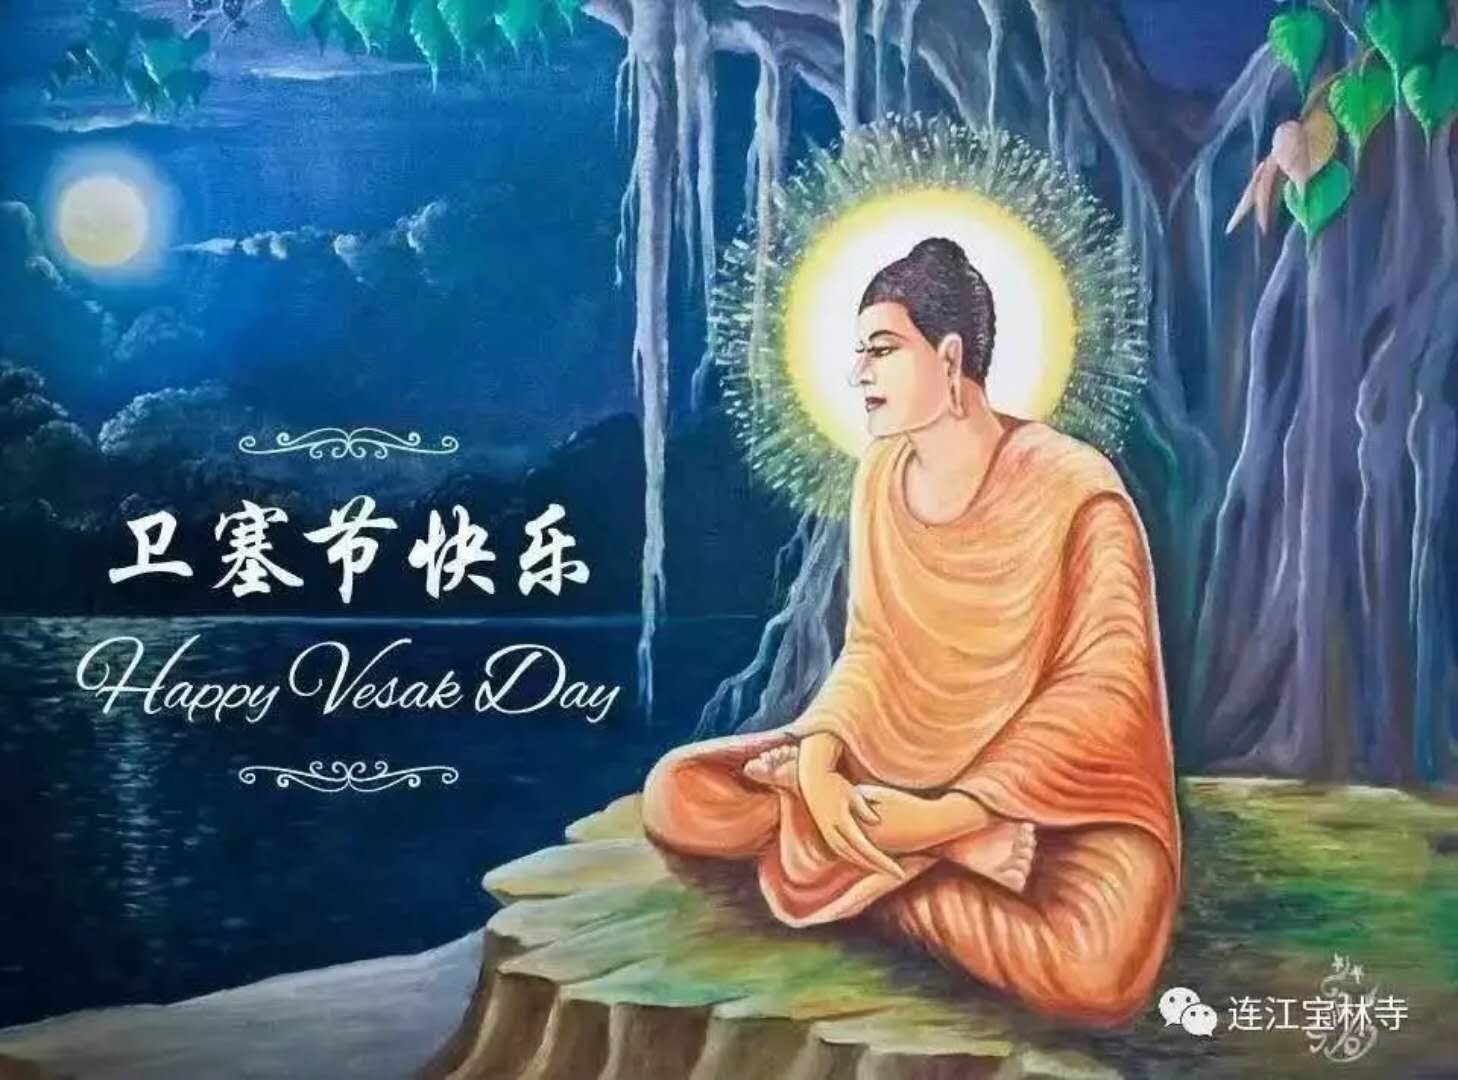 也是藏传佛教的重要日子,其意义及重要性好比汉传佛教的佛诞(农历